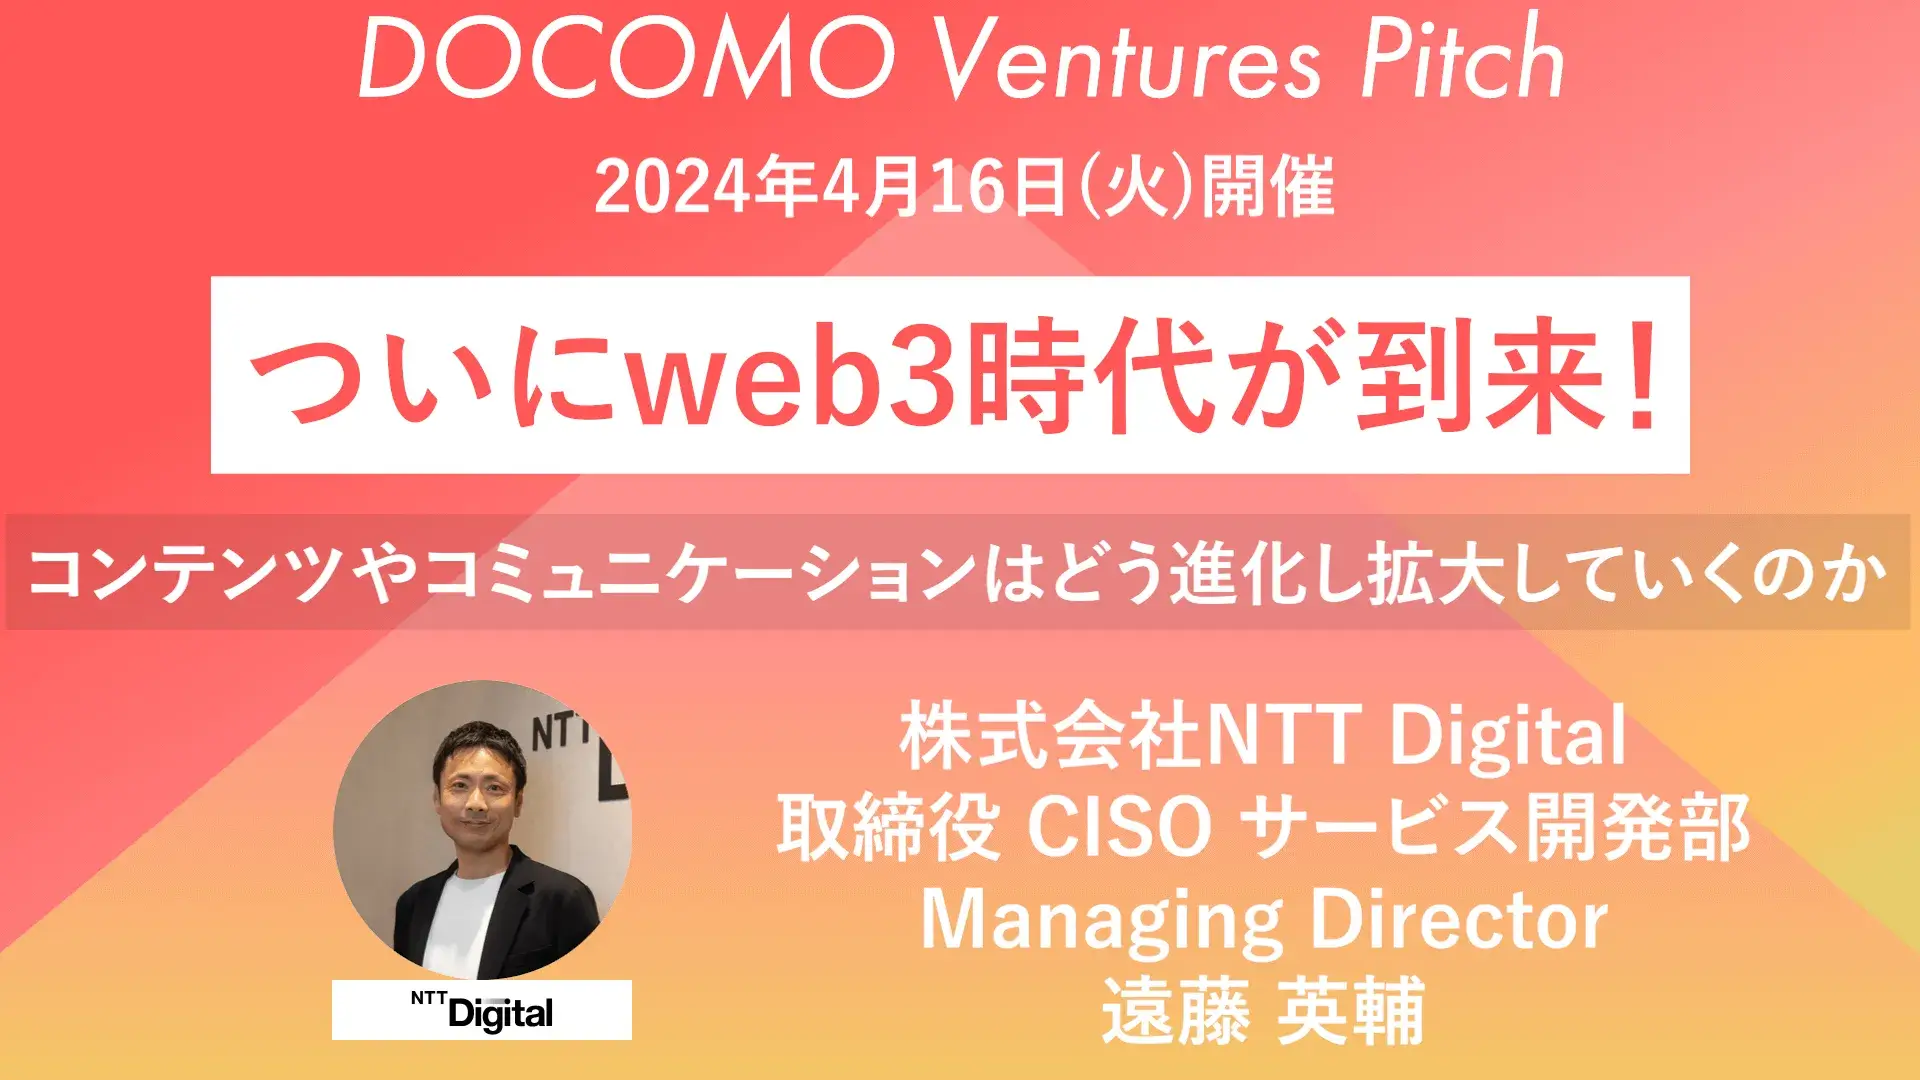 【ピッチ/web3】株式会社NTT Digital 取締役 CISO サービス開発部 Managing Direcor 遠藤 英輔 氏